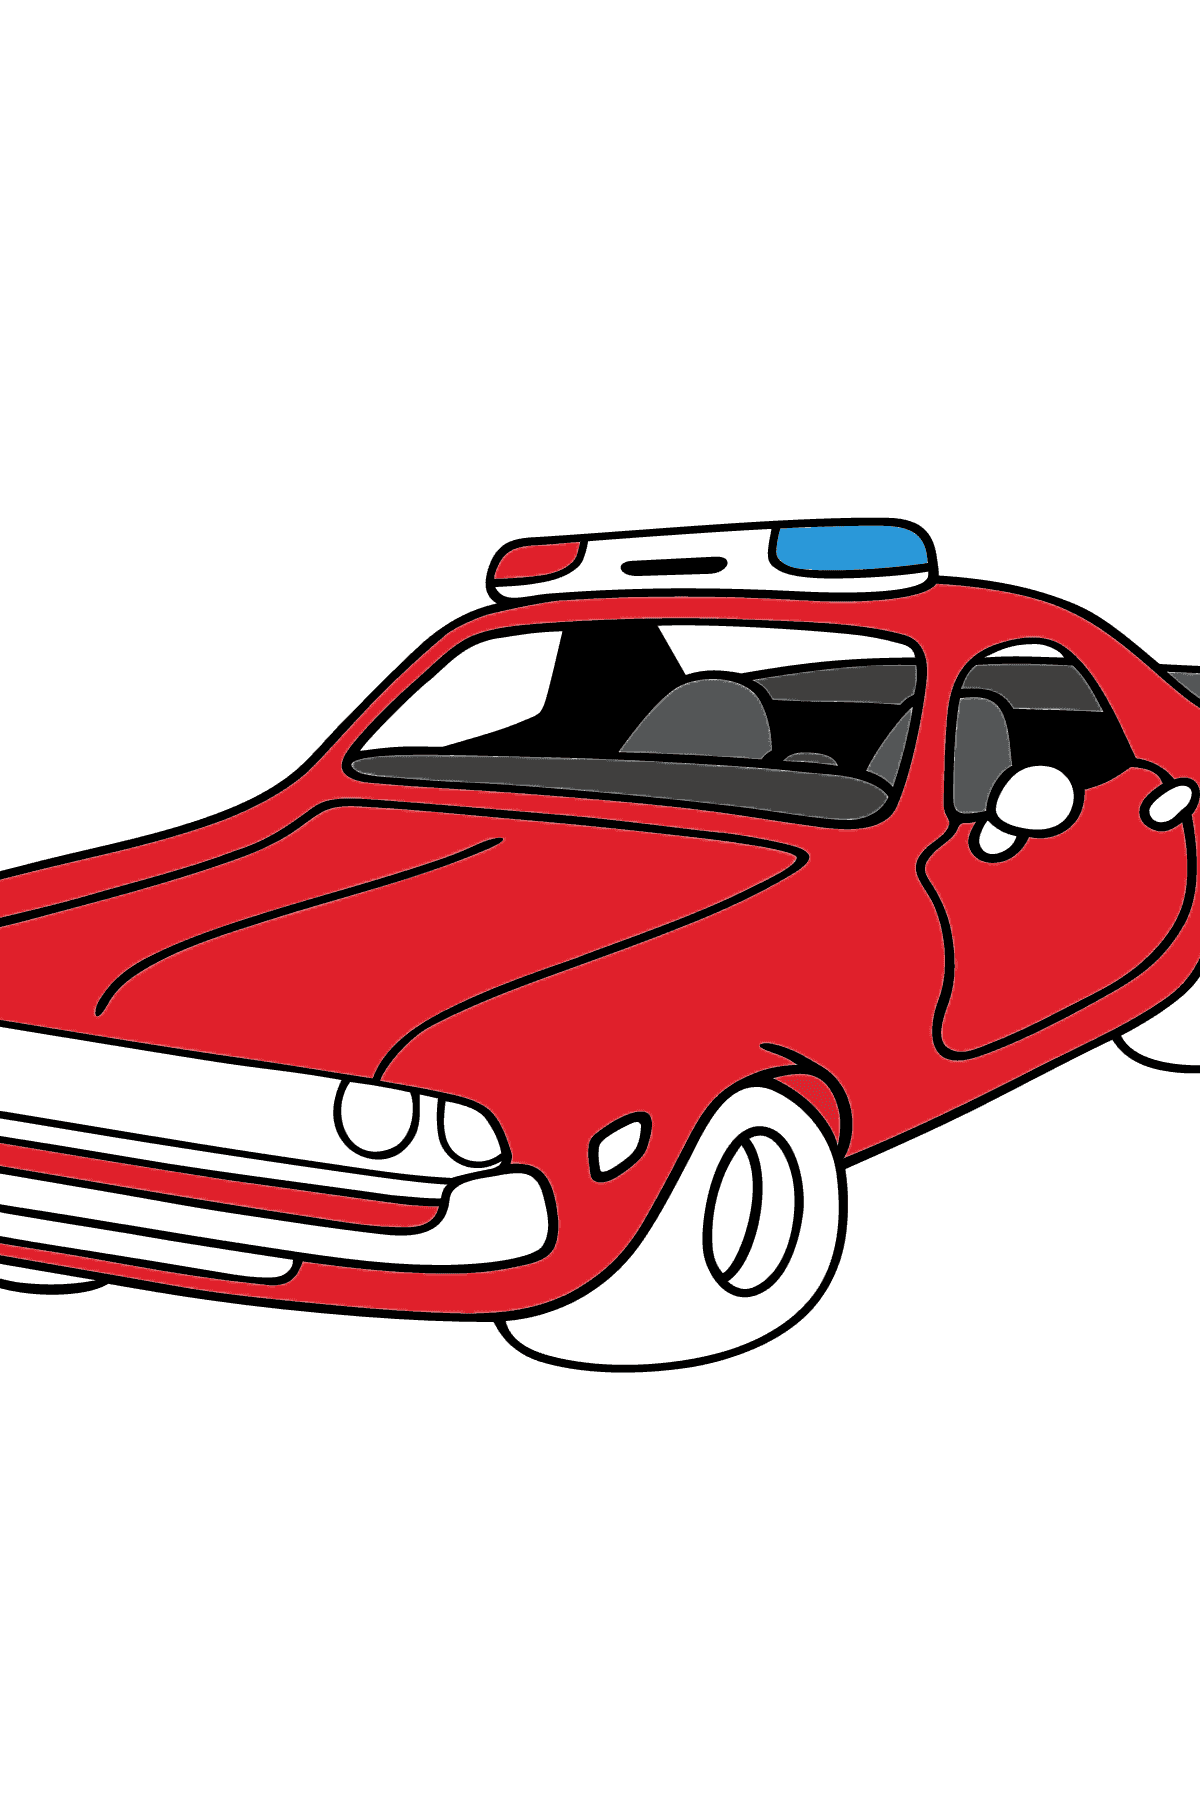 Ausmalbild - Ein rotes Polizeiauto - Malvorlagen für Kinder